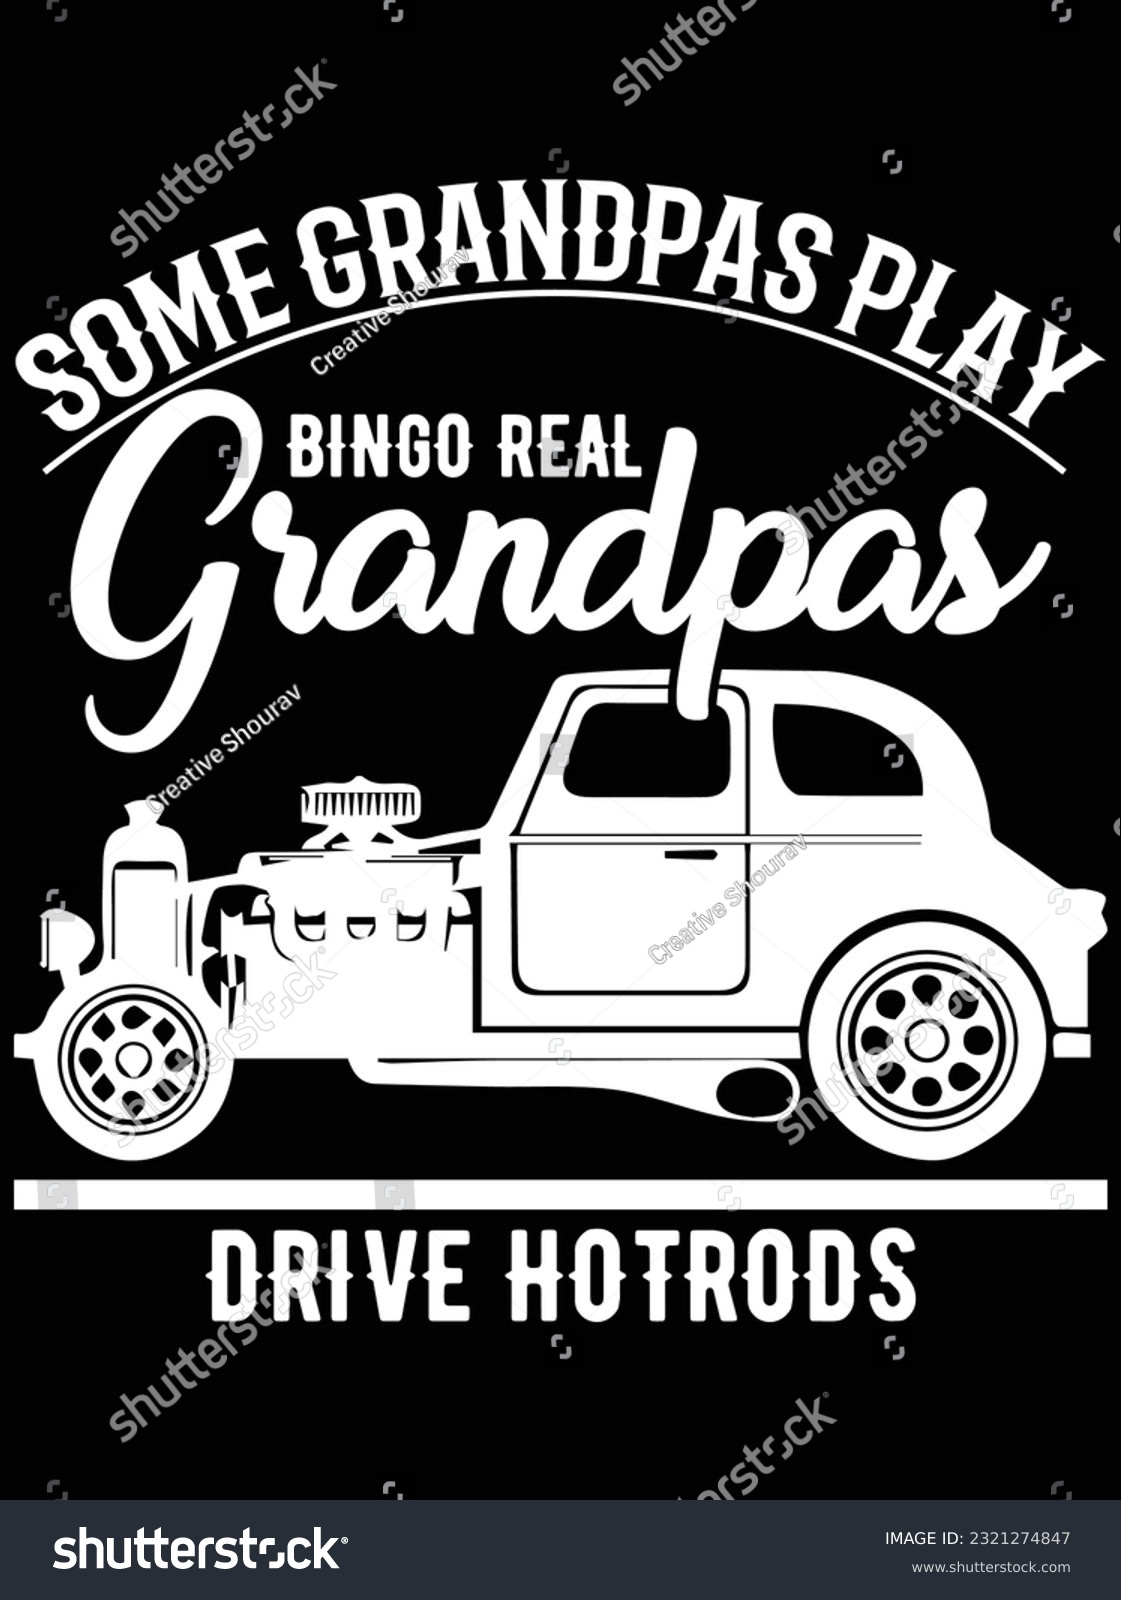 SVG of Some grandpas play bingo real grandpas vector art design, eps file. design file for t-shirt. SVG, EPS cuttable design file svg